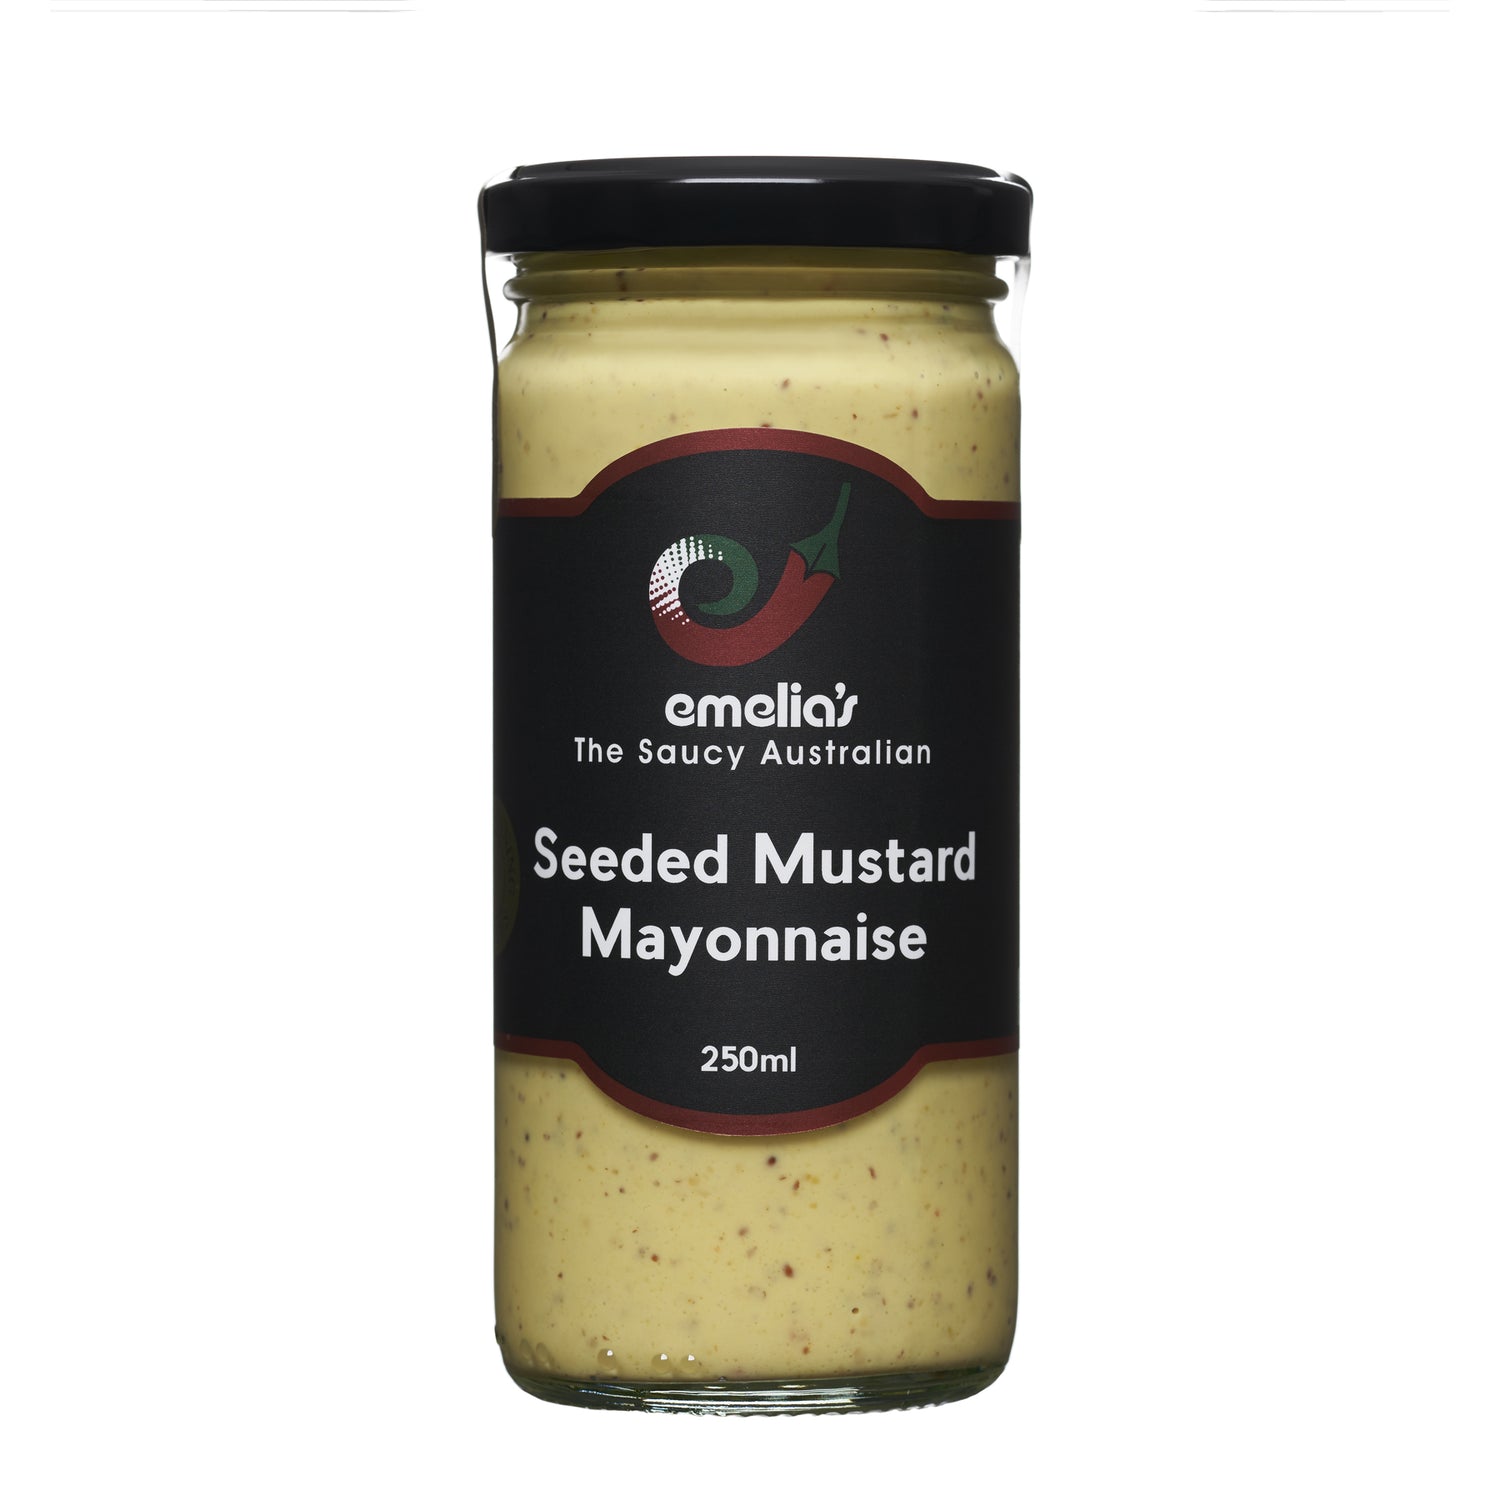 Seeded mustard mayonnaise